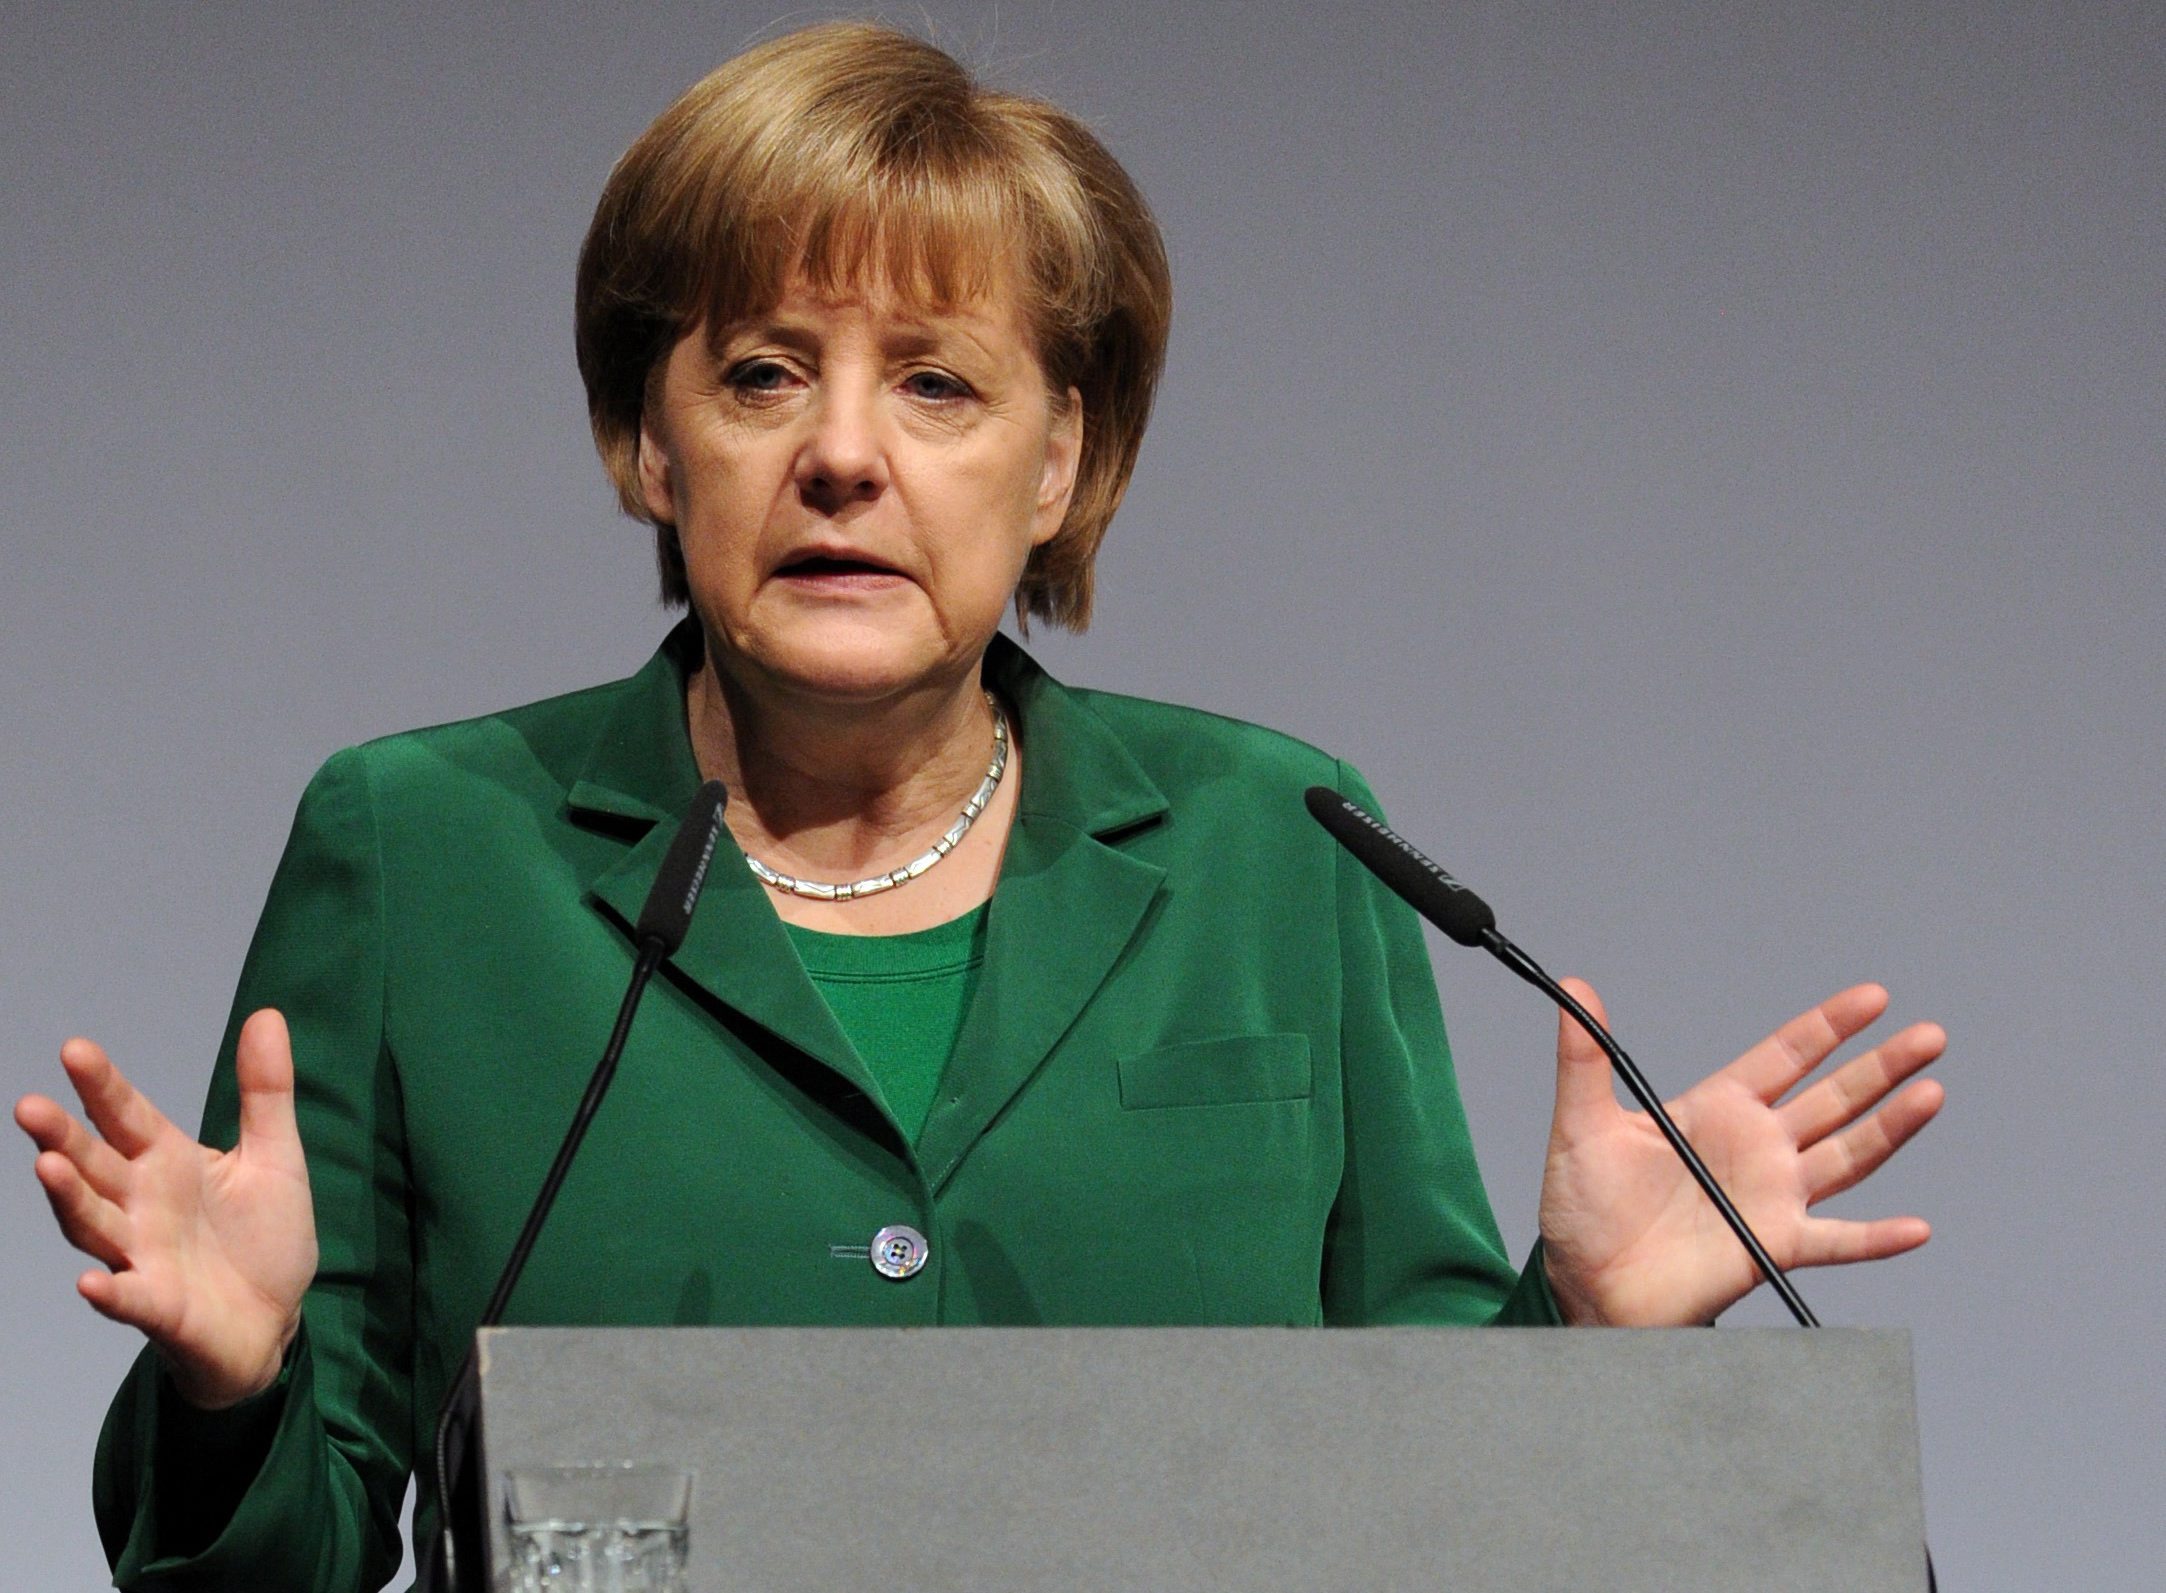 Επιμένει η Προεδρία για την πρόταση της Μέρκελ για δημοψήφισμα παραμονής στο ευρώ